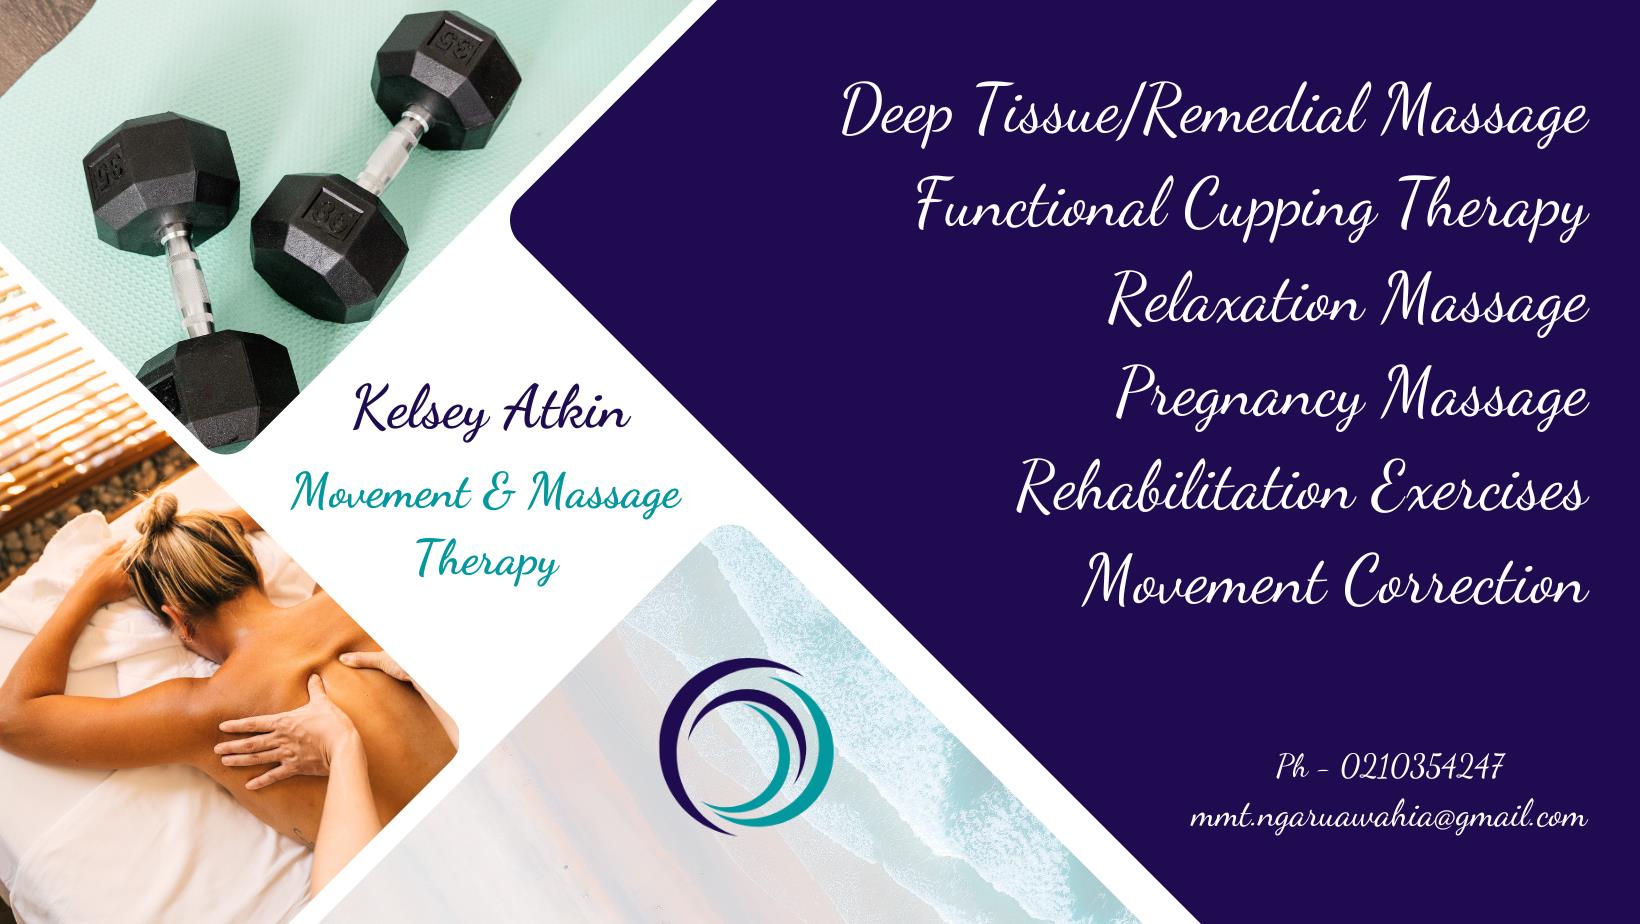 Kelsey Atkin - Movement & Massage Therapy